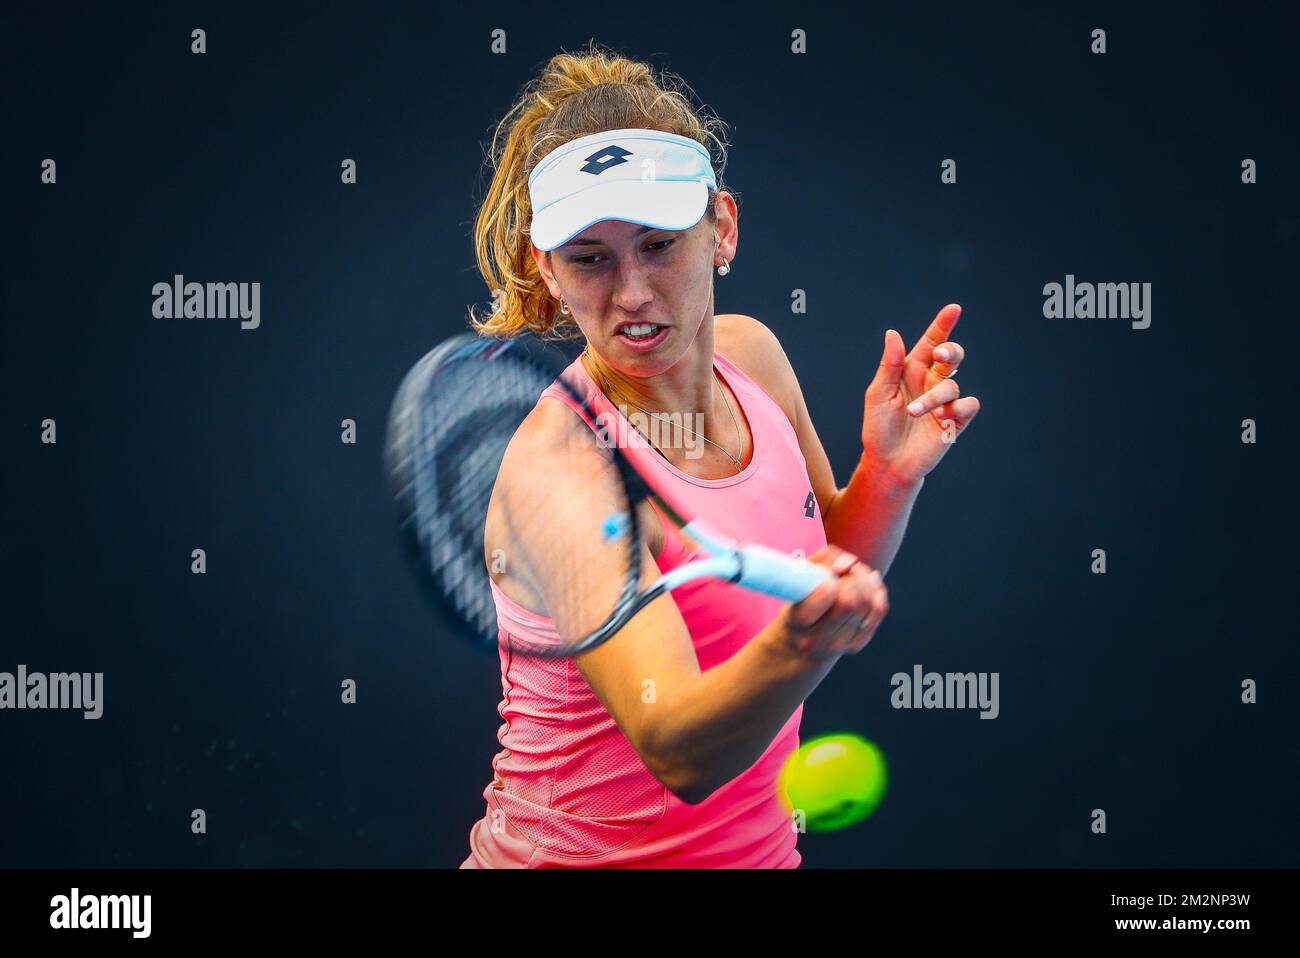 Elise Mertens è stato raffigurato in azione durante una sessione di allenamento al Grand Slam di tennis 'Australian Open', sabato 12 gennaio 2019 a Melbourne Park, Melbourne, Australia. Questo primo grande slam della stagione si svolgerà dal 14 al 27 gennaio. FOTO DI BELGA PATRICK HAMILTON Foto Stock